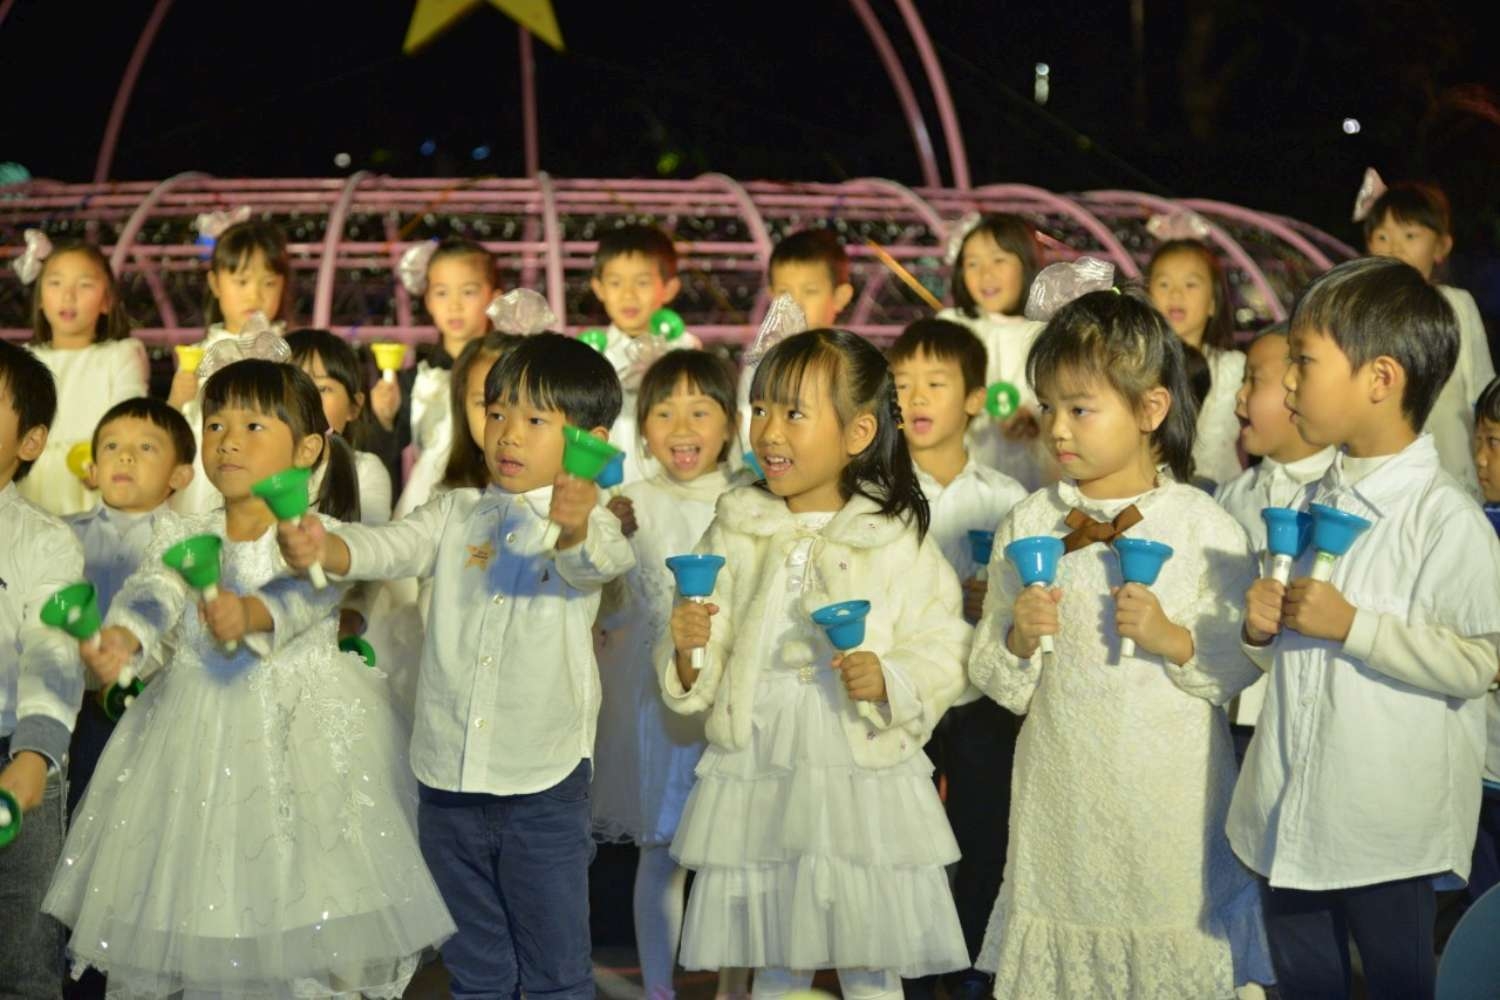 2019感恩點燈晚會在新竹公園 副總統陳建仁與林智堅市長攜手點亮幸福|||